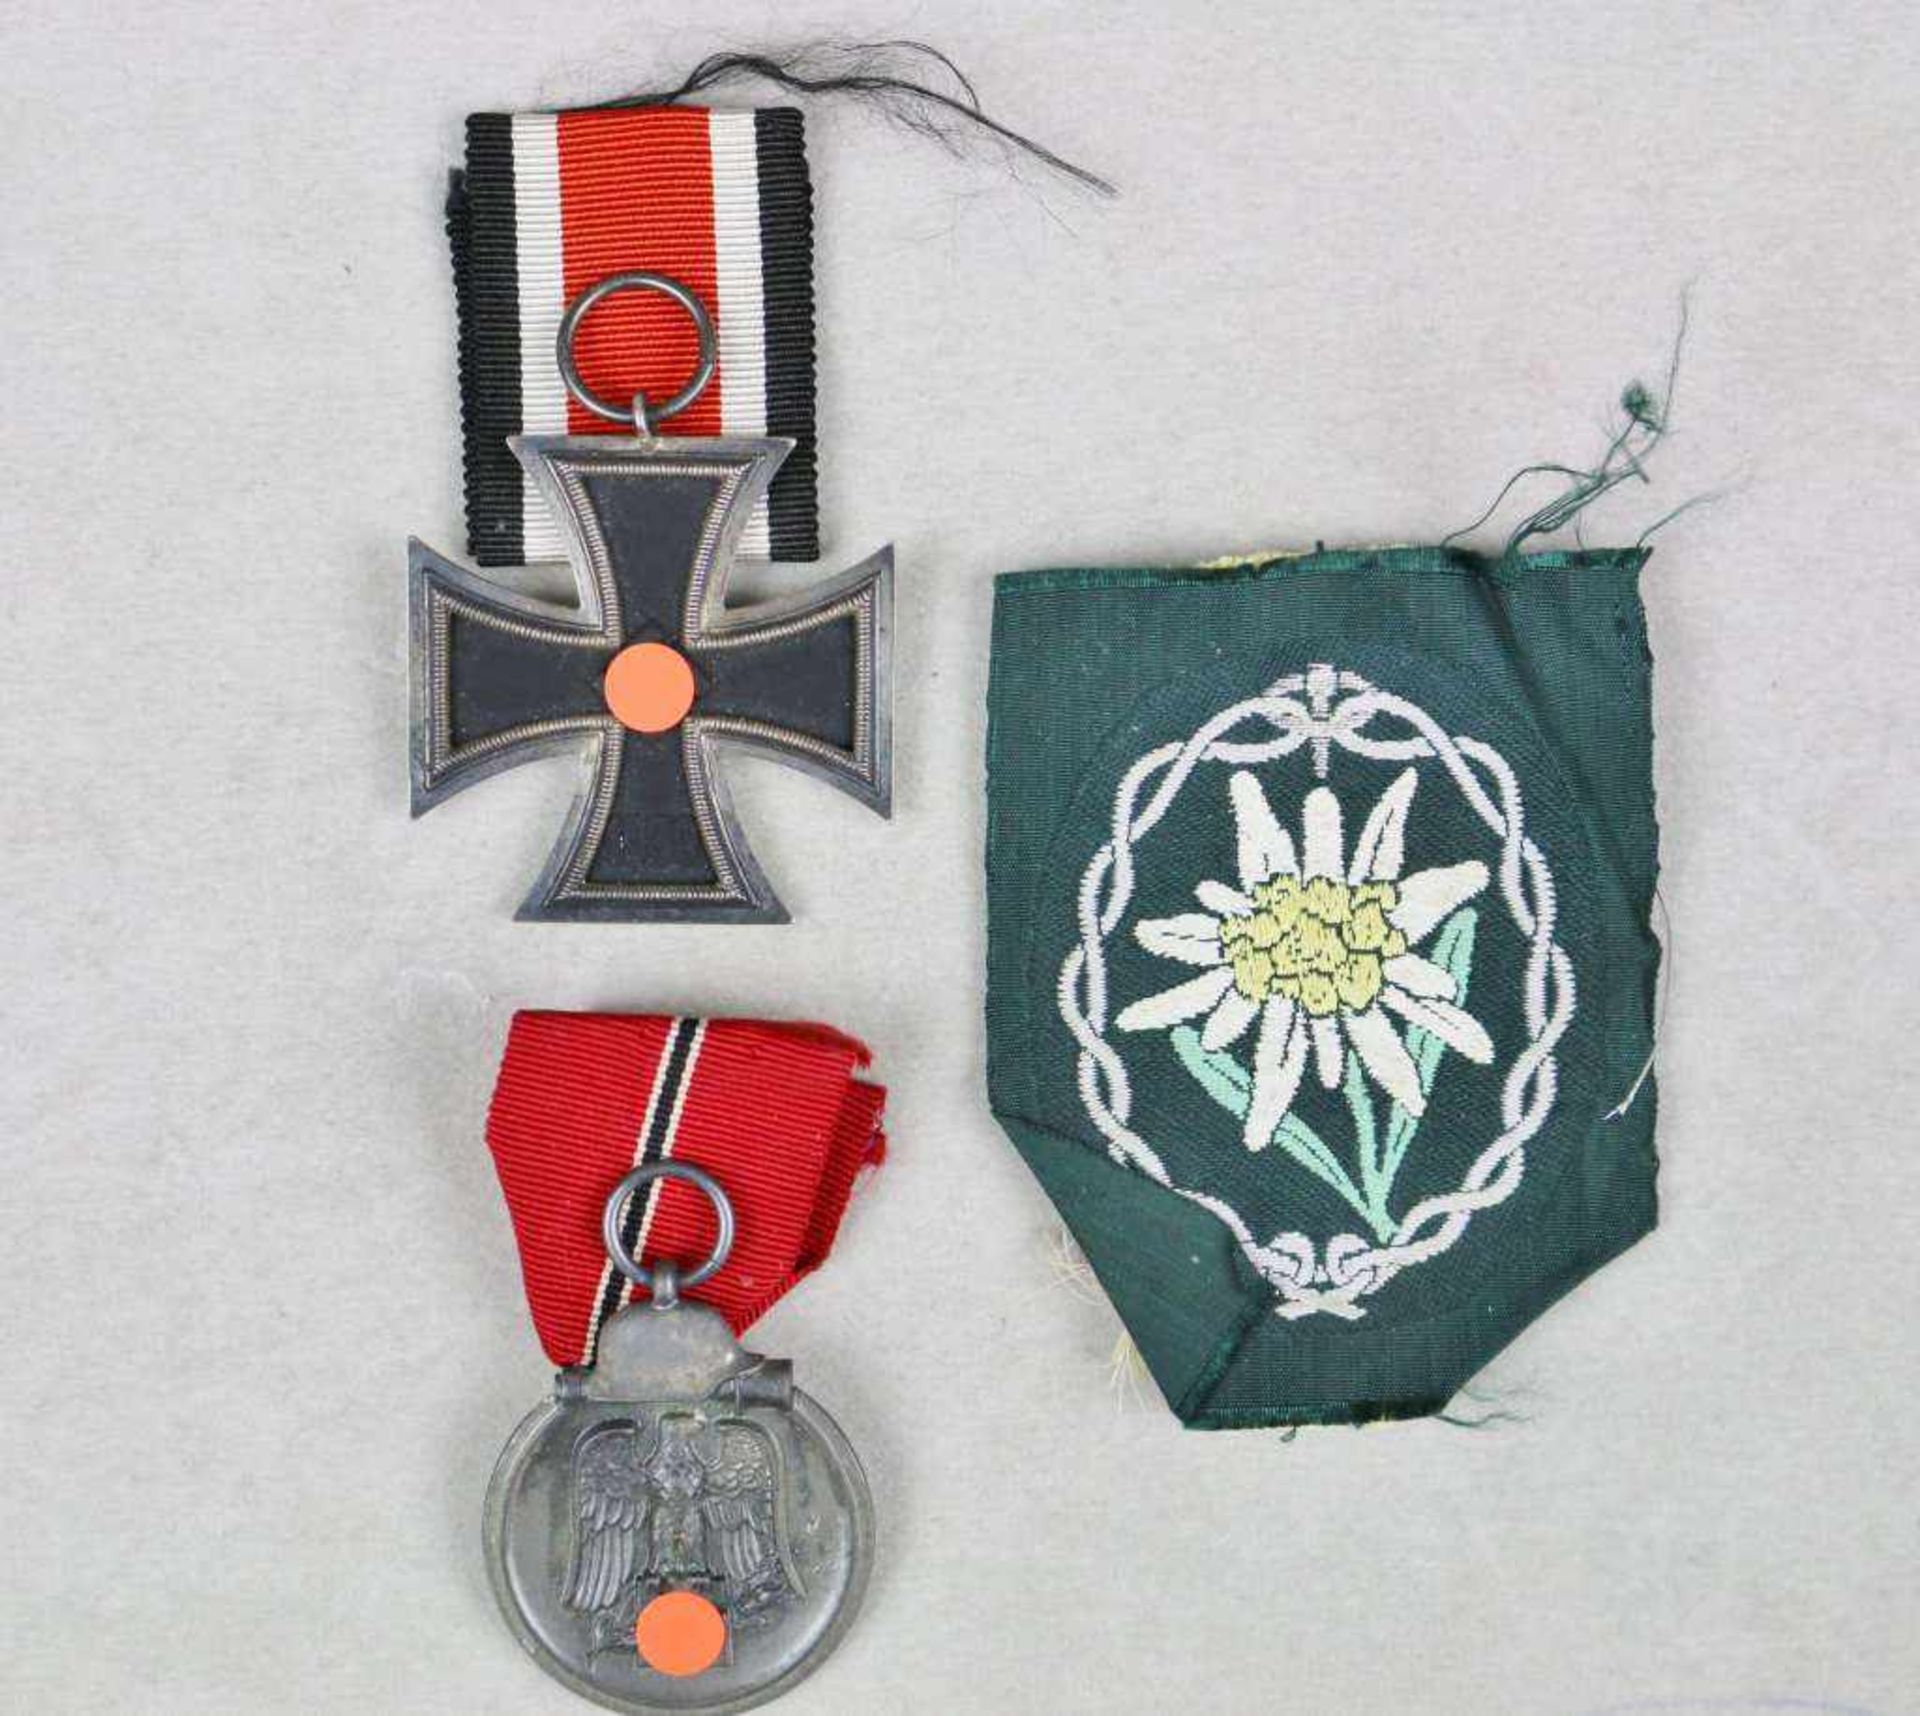 Eisernes Kreuz 2. Klasse 1939 am Band, Ostmedaille sowie Stoffabzeichen der Gebirgsjäger.